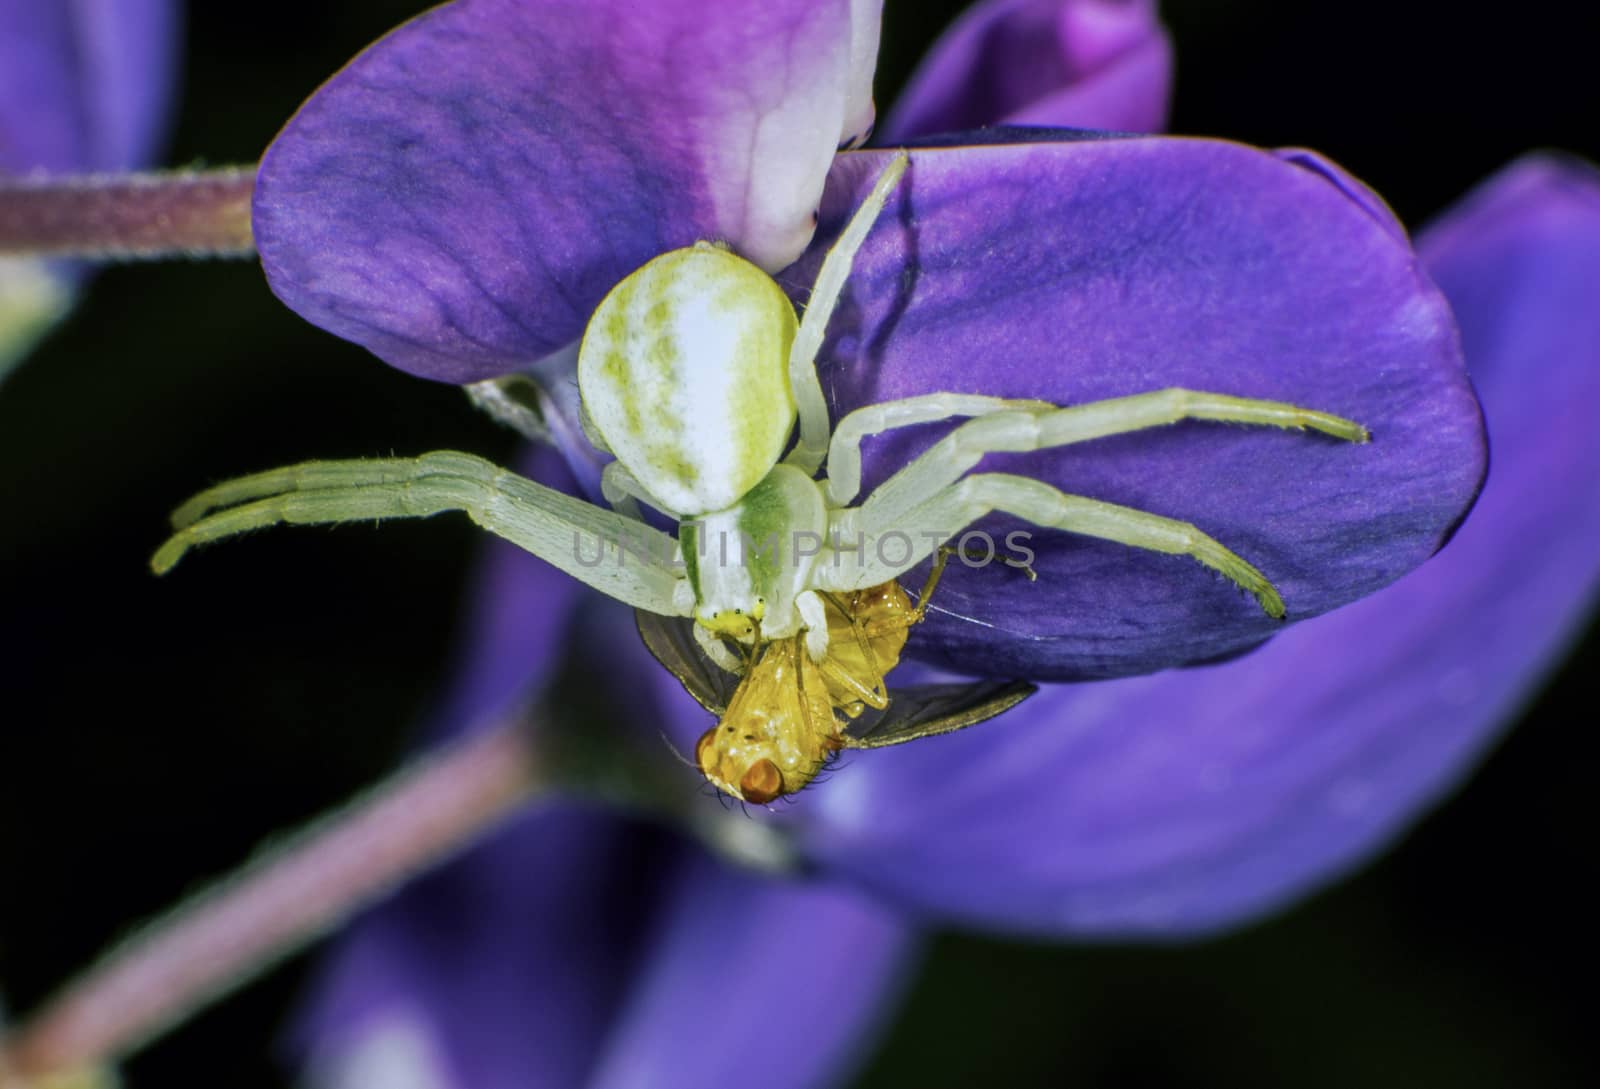 Flower crab spider with prey